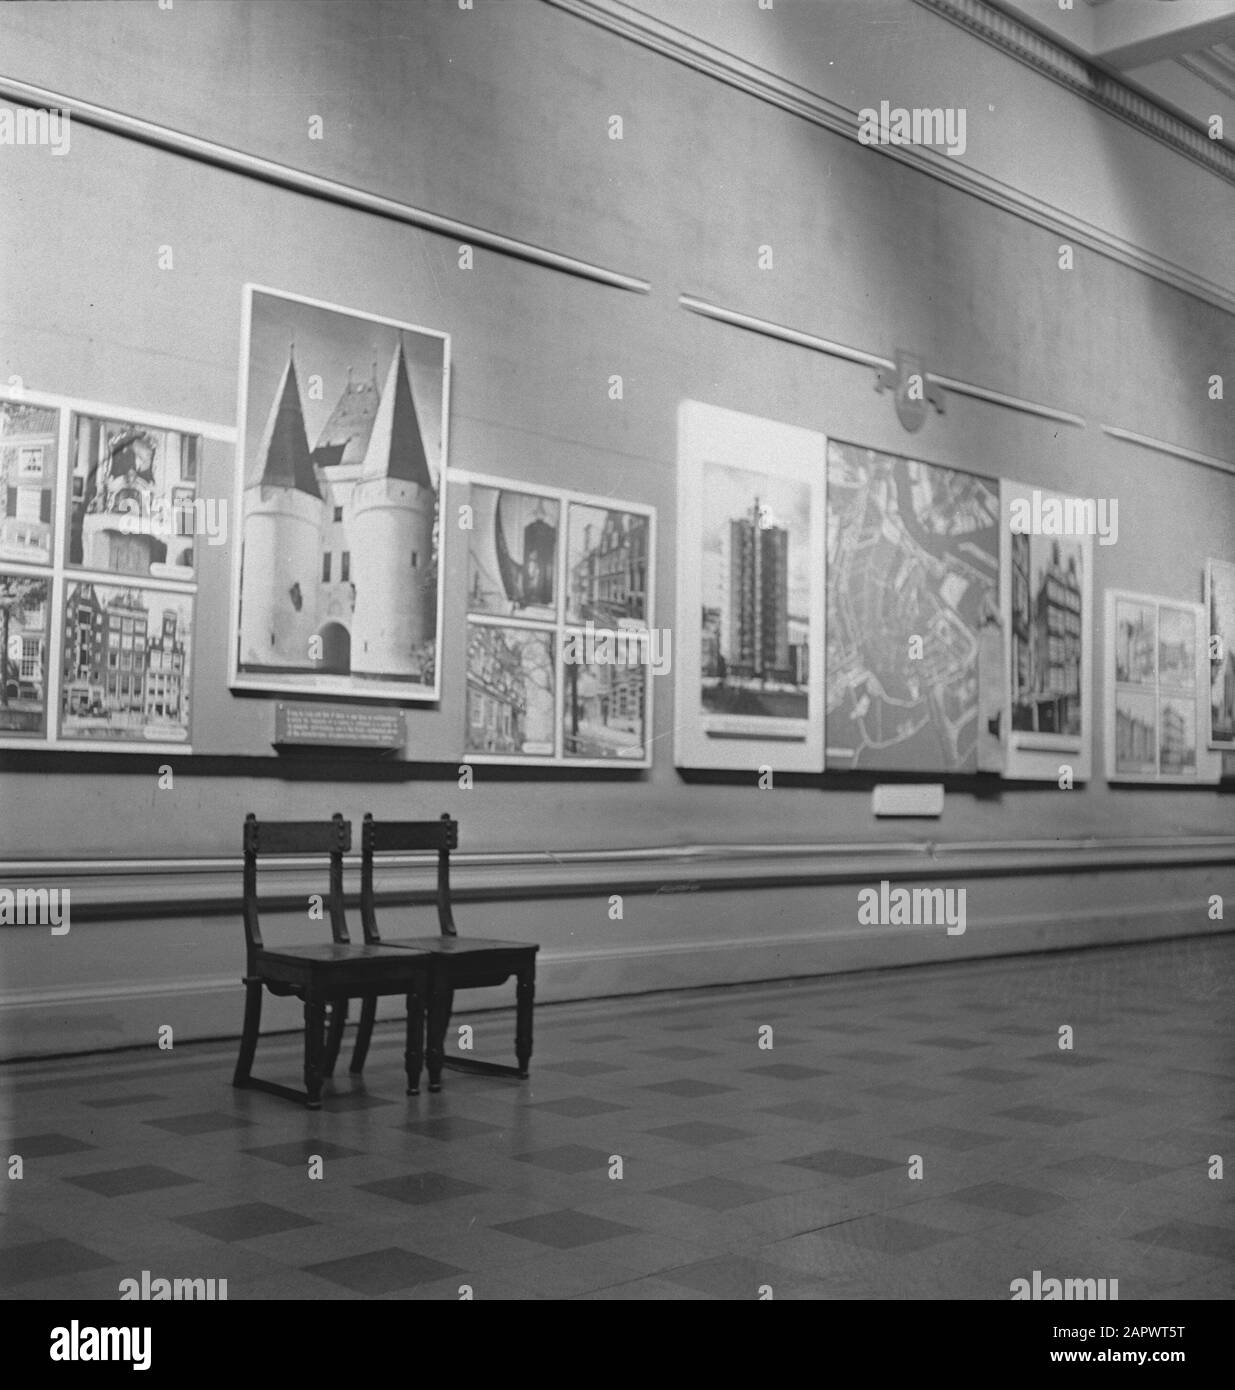 HIE [Olanda in Inghilterra]/Anefo London series Dutch exhibition in Belfast Data: Maggio 1943 Località: Belfast, Gran Bretagna Parole Chiave: EXHIBITIONS, World War II Foto Stock